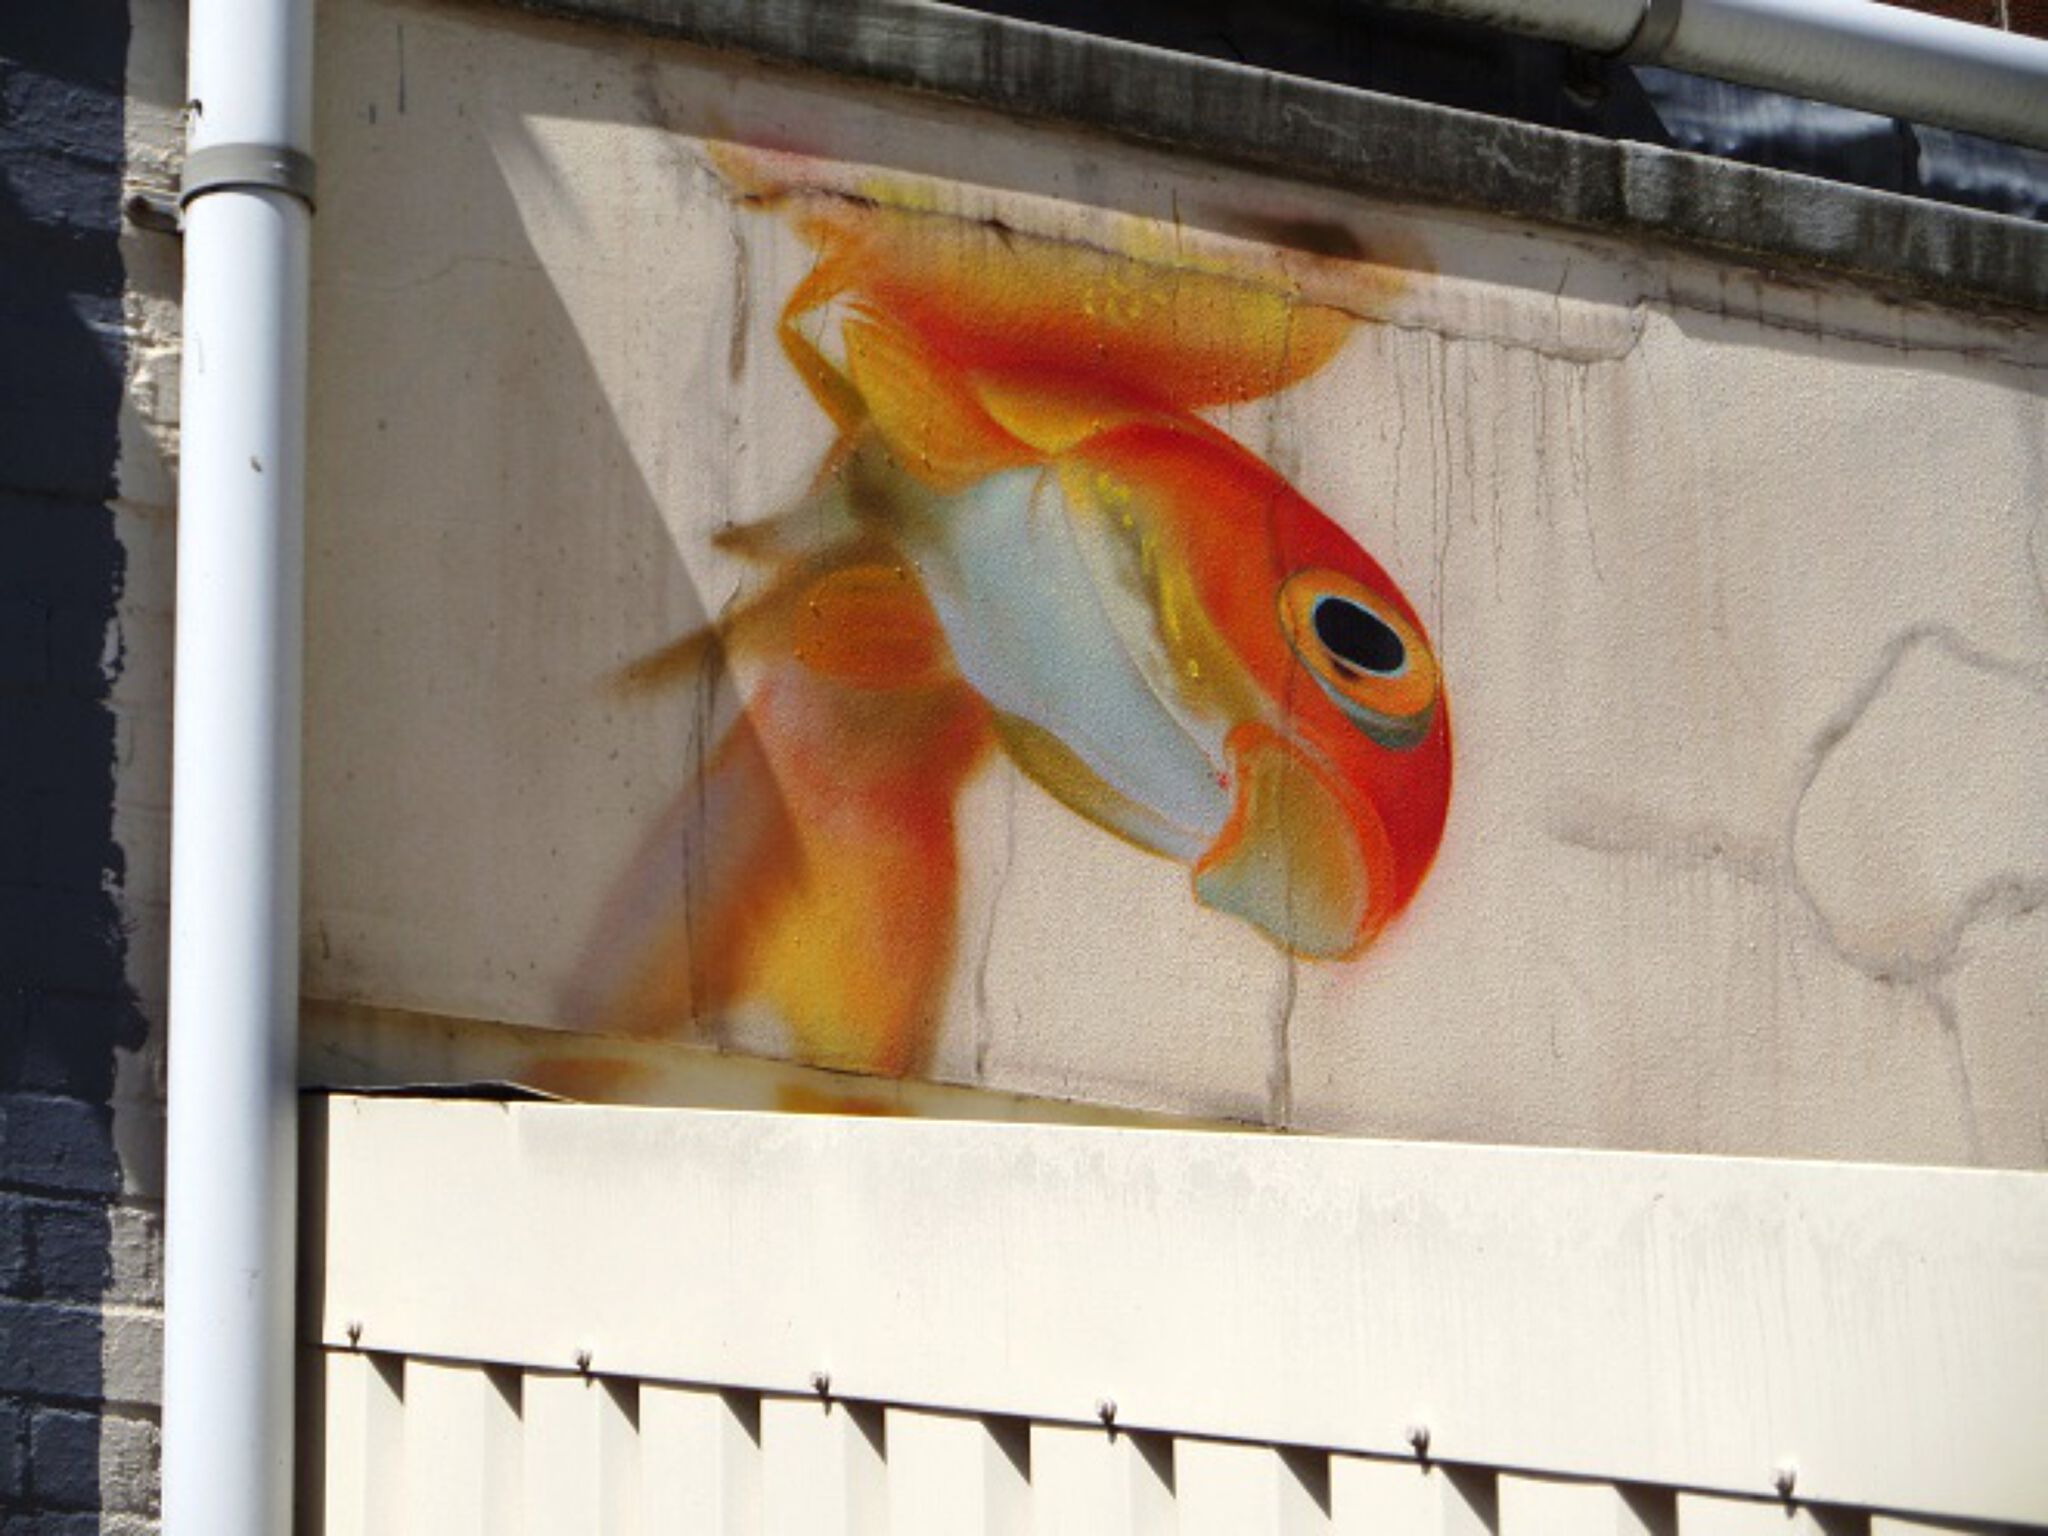 Unknown - Bristol&mdash;Goldfish